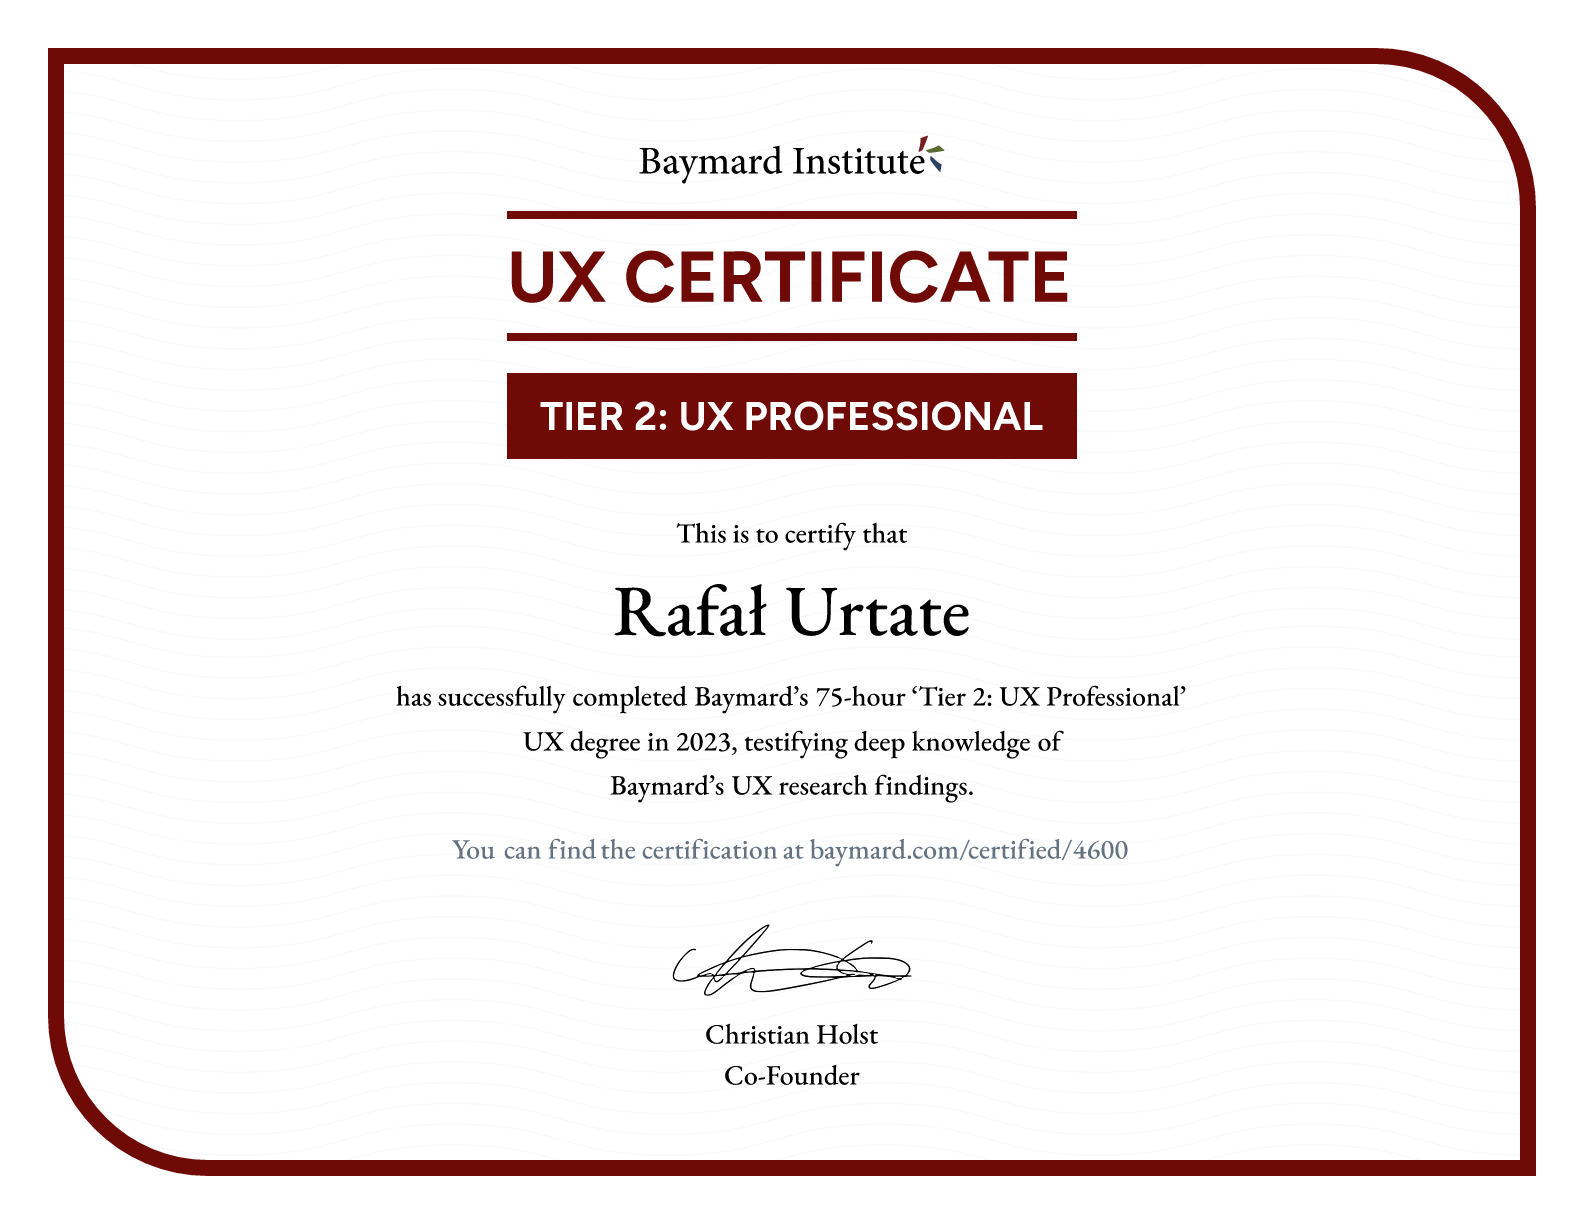 Rafał Urtate’s certificate